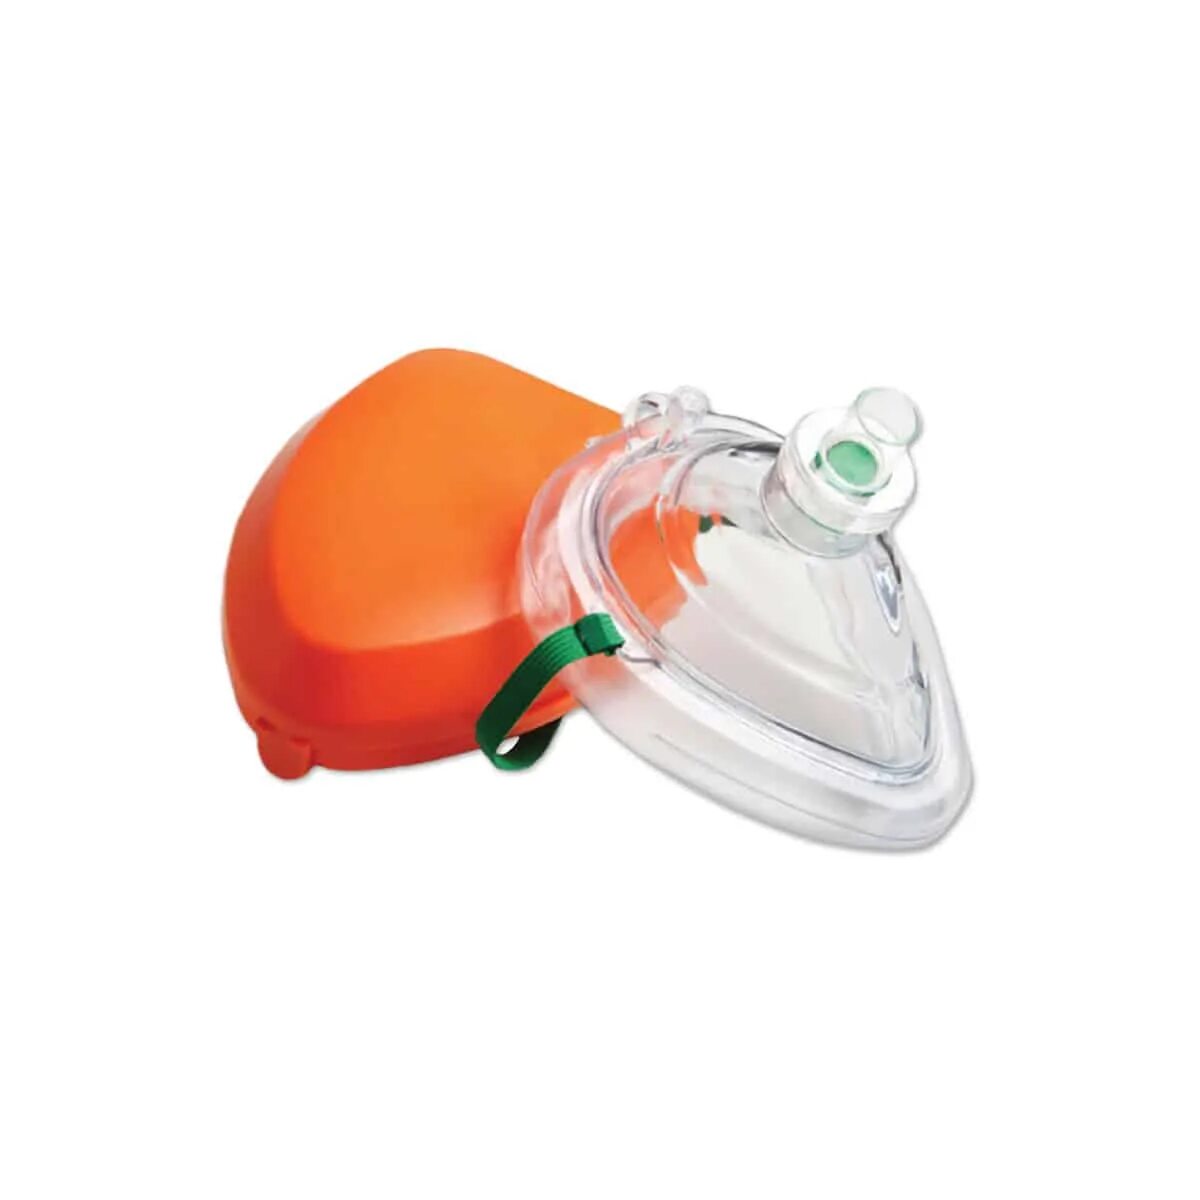 Клапан для искусственного дыхания. Карманная реанимационная маска для СЛР. Маска для СЛР С клапаном. Маска индивидуальной защиты для СЛР. Карманная маска для ИВЛ "рот-маска" Laerdal.